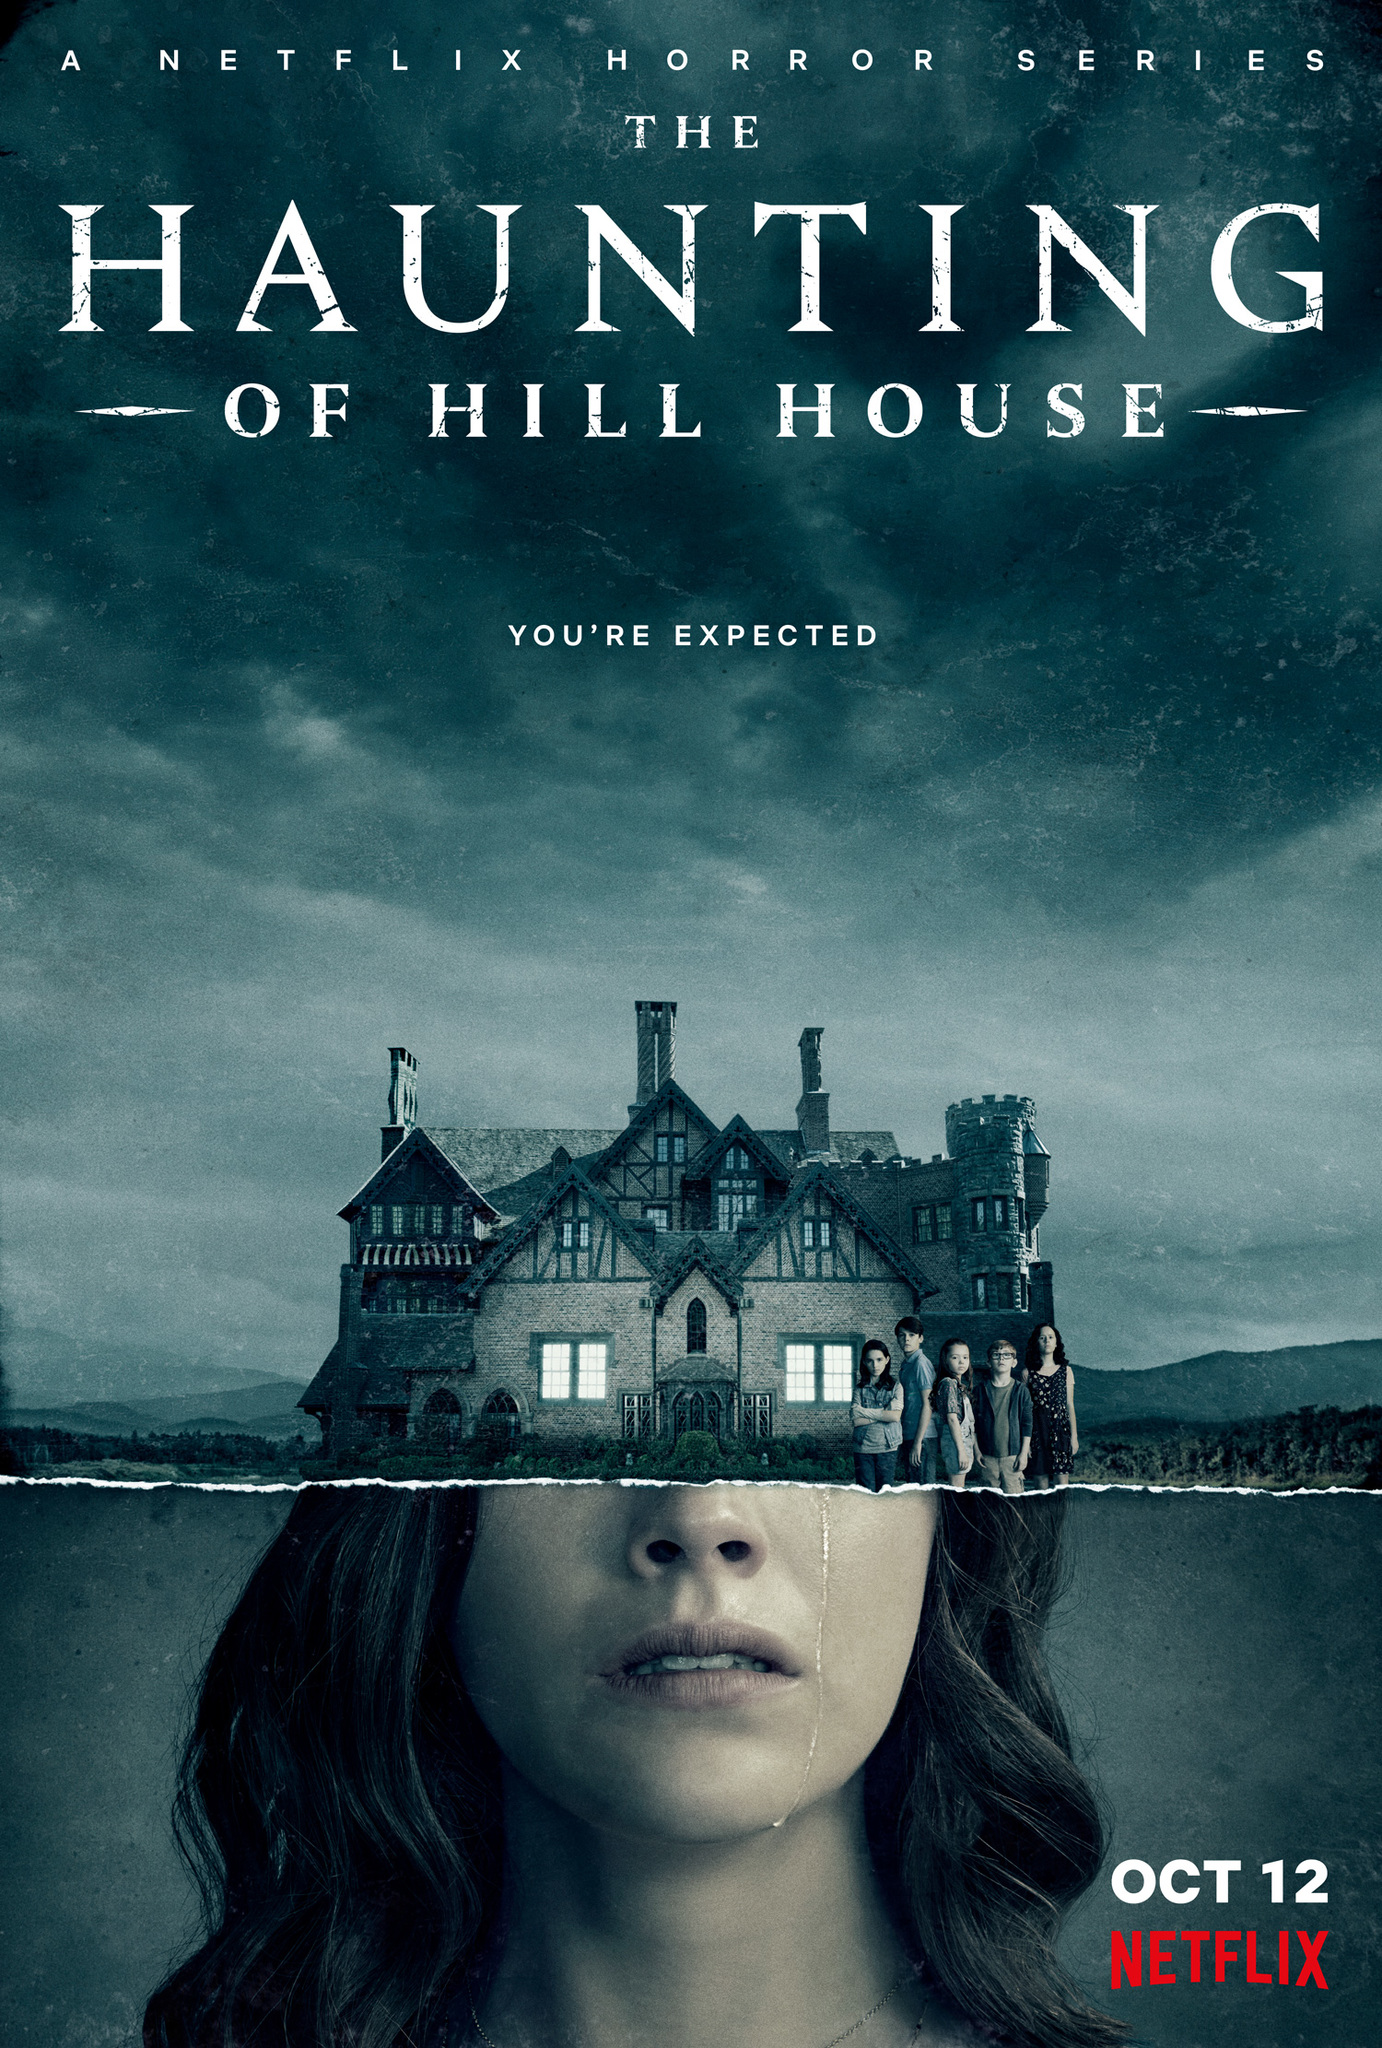 The Haunting of Hill House (2018) ฮิลล์เฮาส์ บ้านกระตุกวิญญาณ